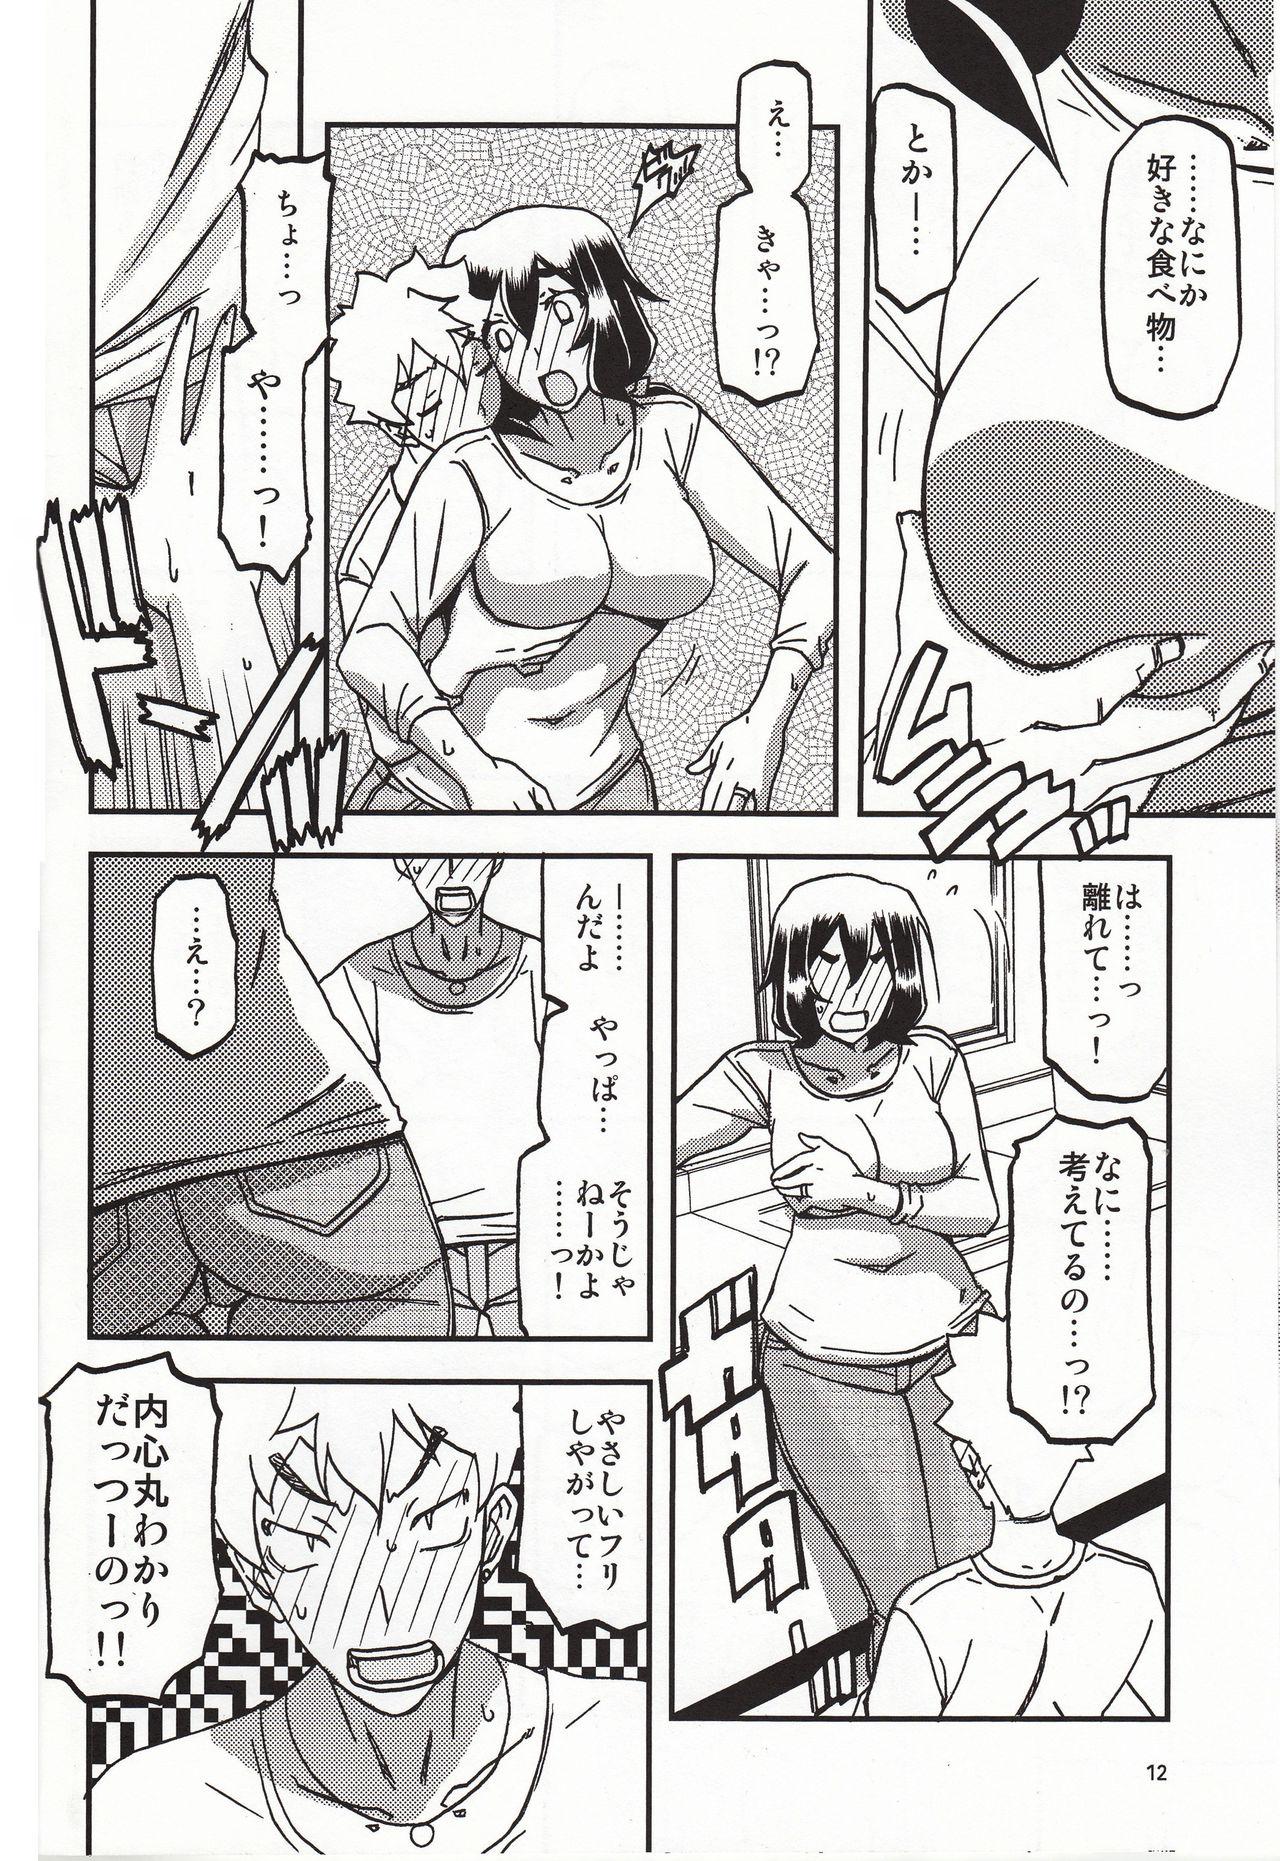 Behind Akebi no Mi - Chizuru Katei - Akebi no mi Pink - Page 11